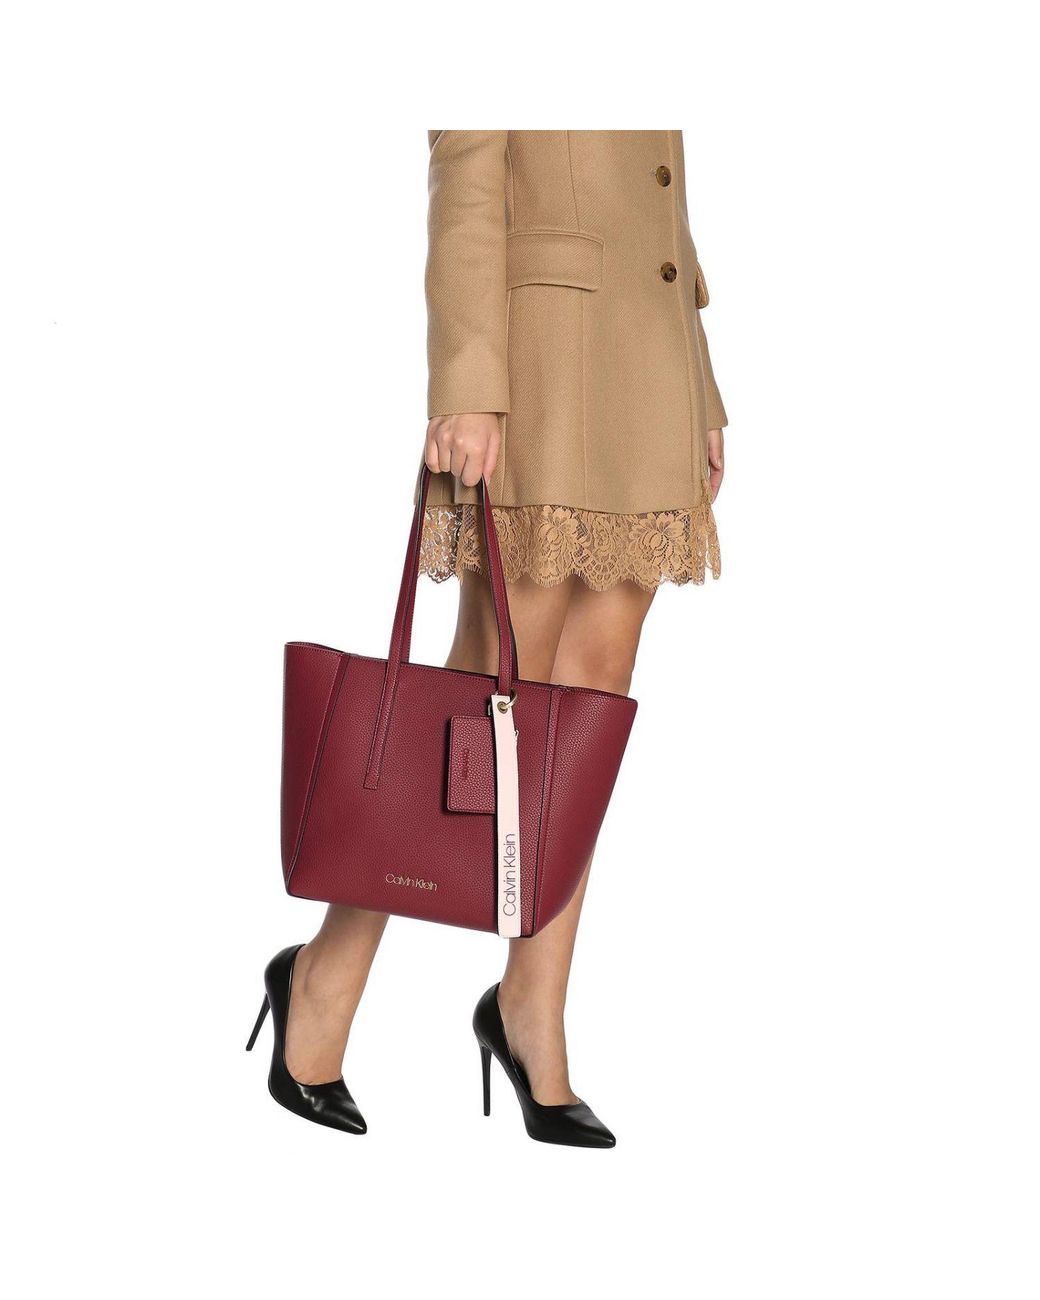 Leather handbag Calvin Klein Burgundy in Leather - 27299883